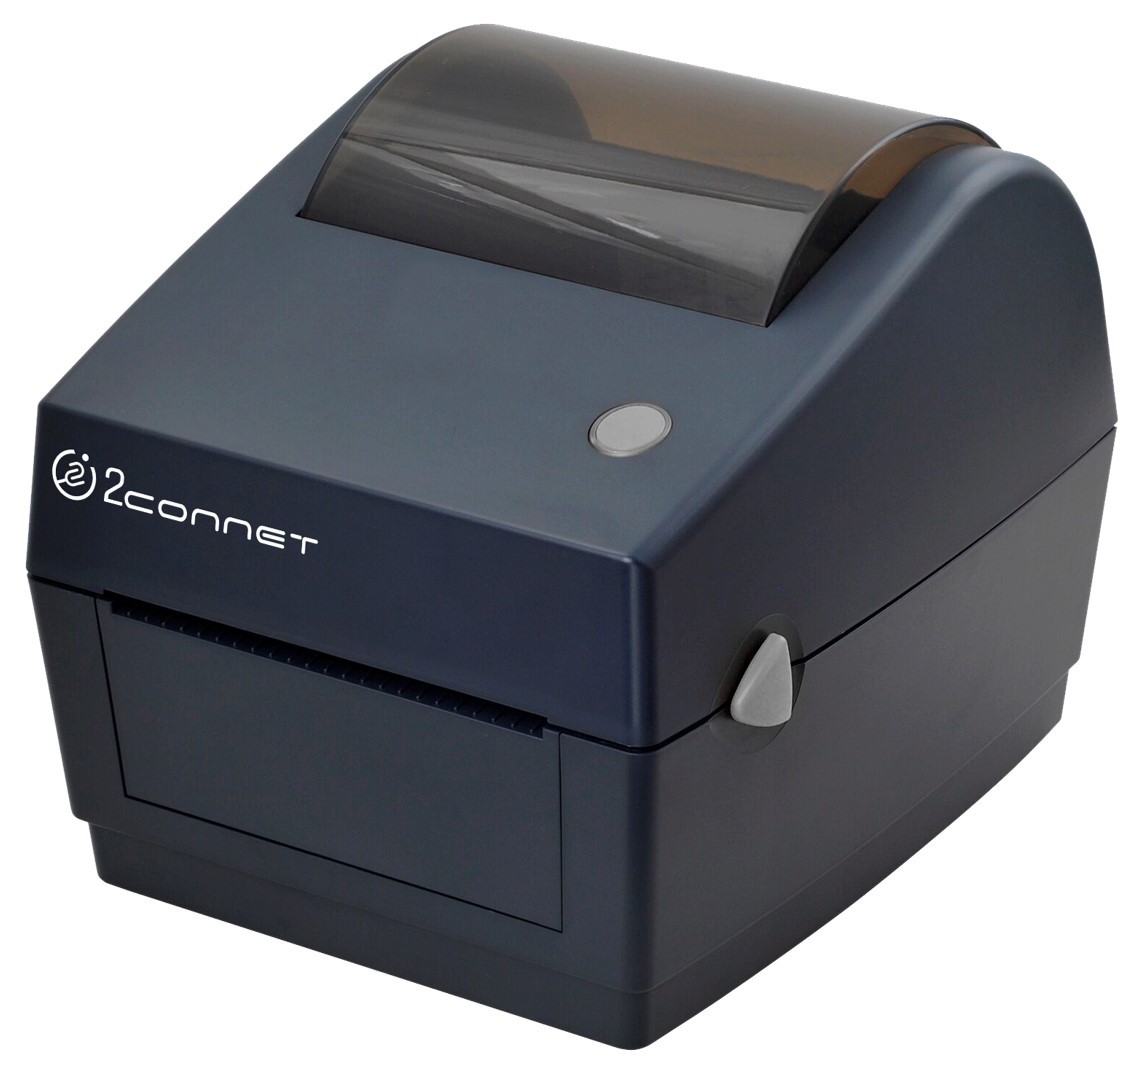 Impresora Térmica de label etiquetas similar a la zebra 0